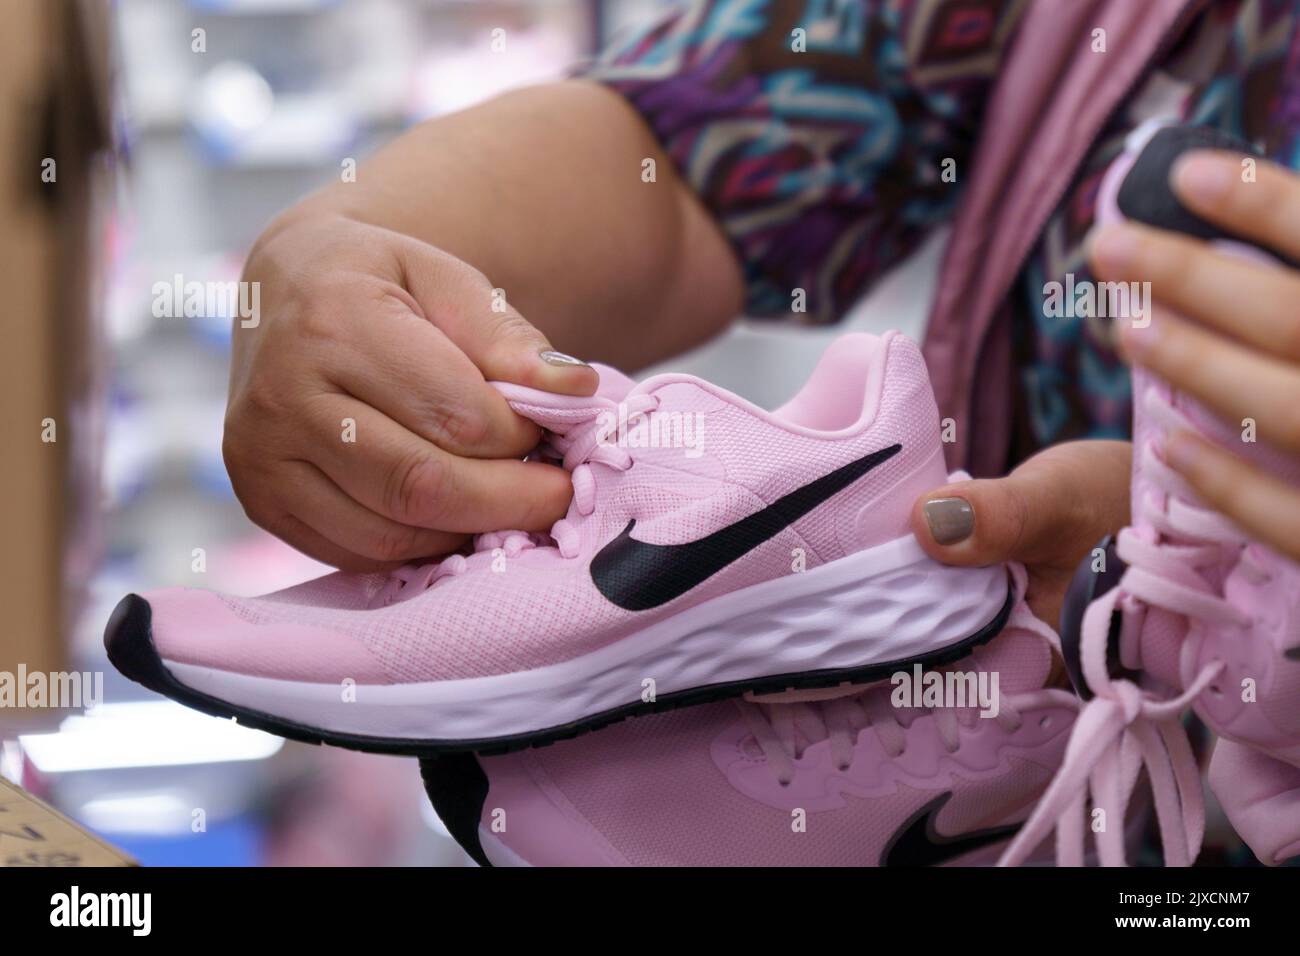 Nike pink shoes immagini e fotografie stock ad alta risoluzione - Alamy